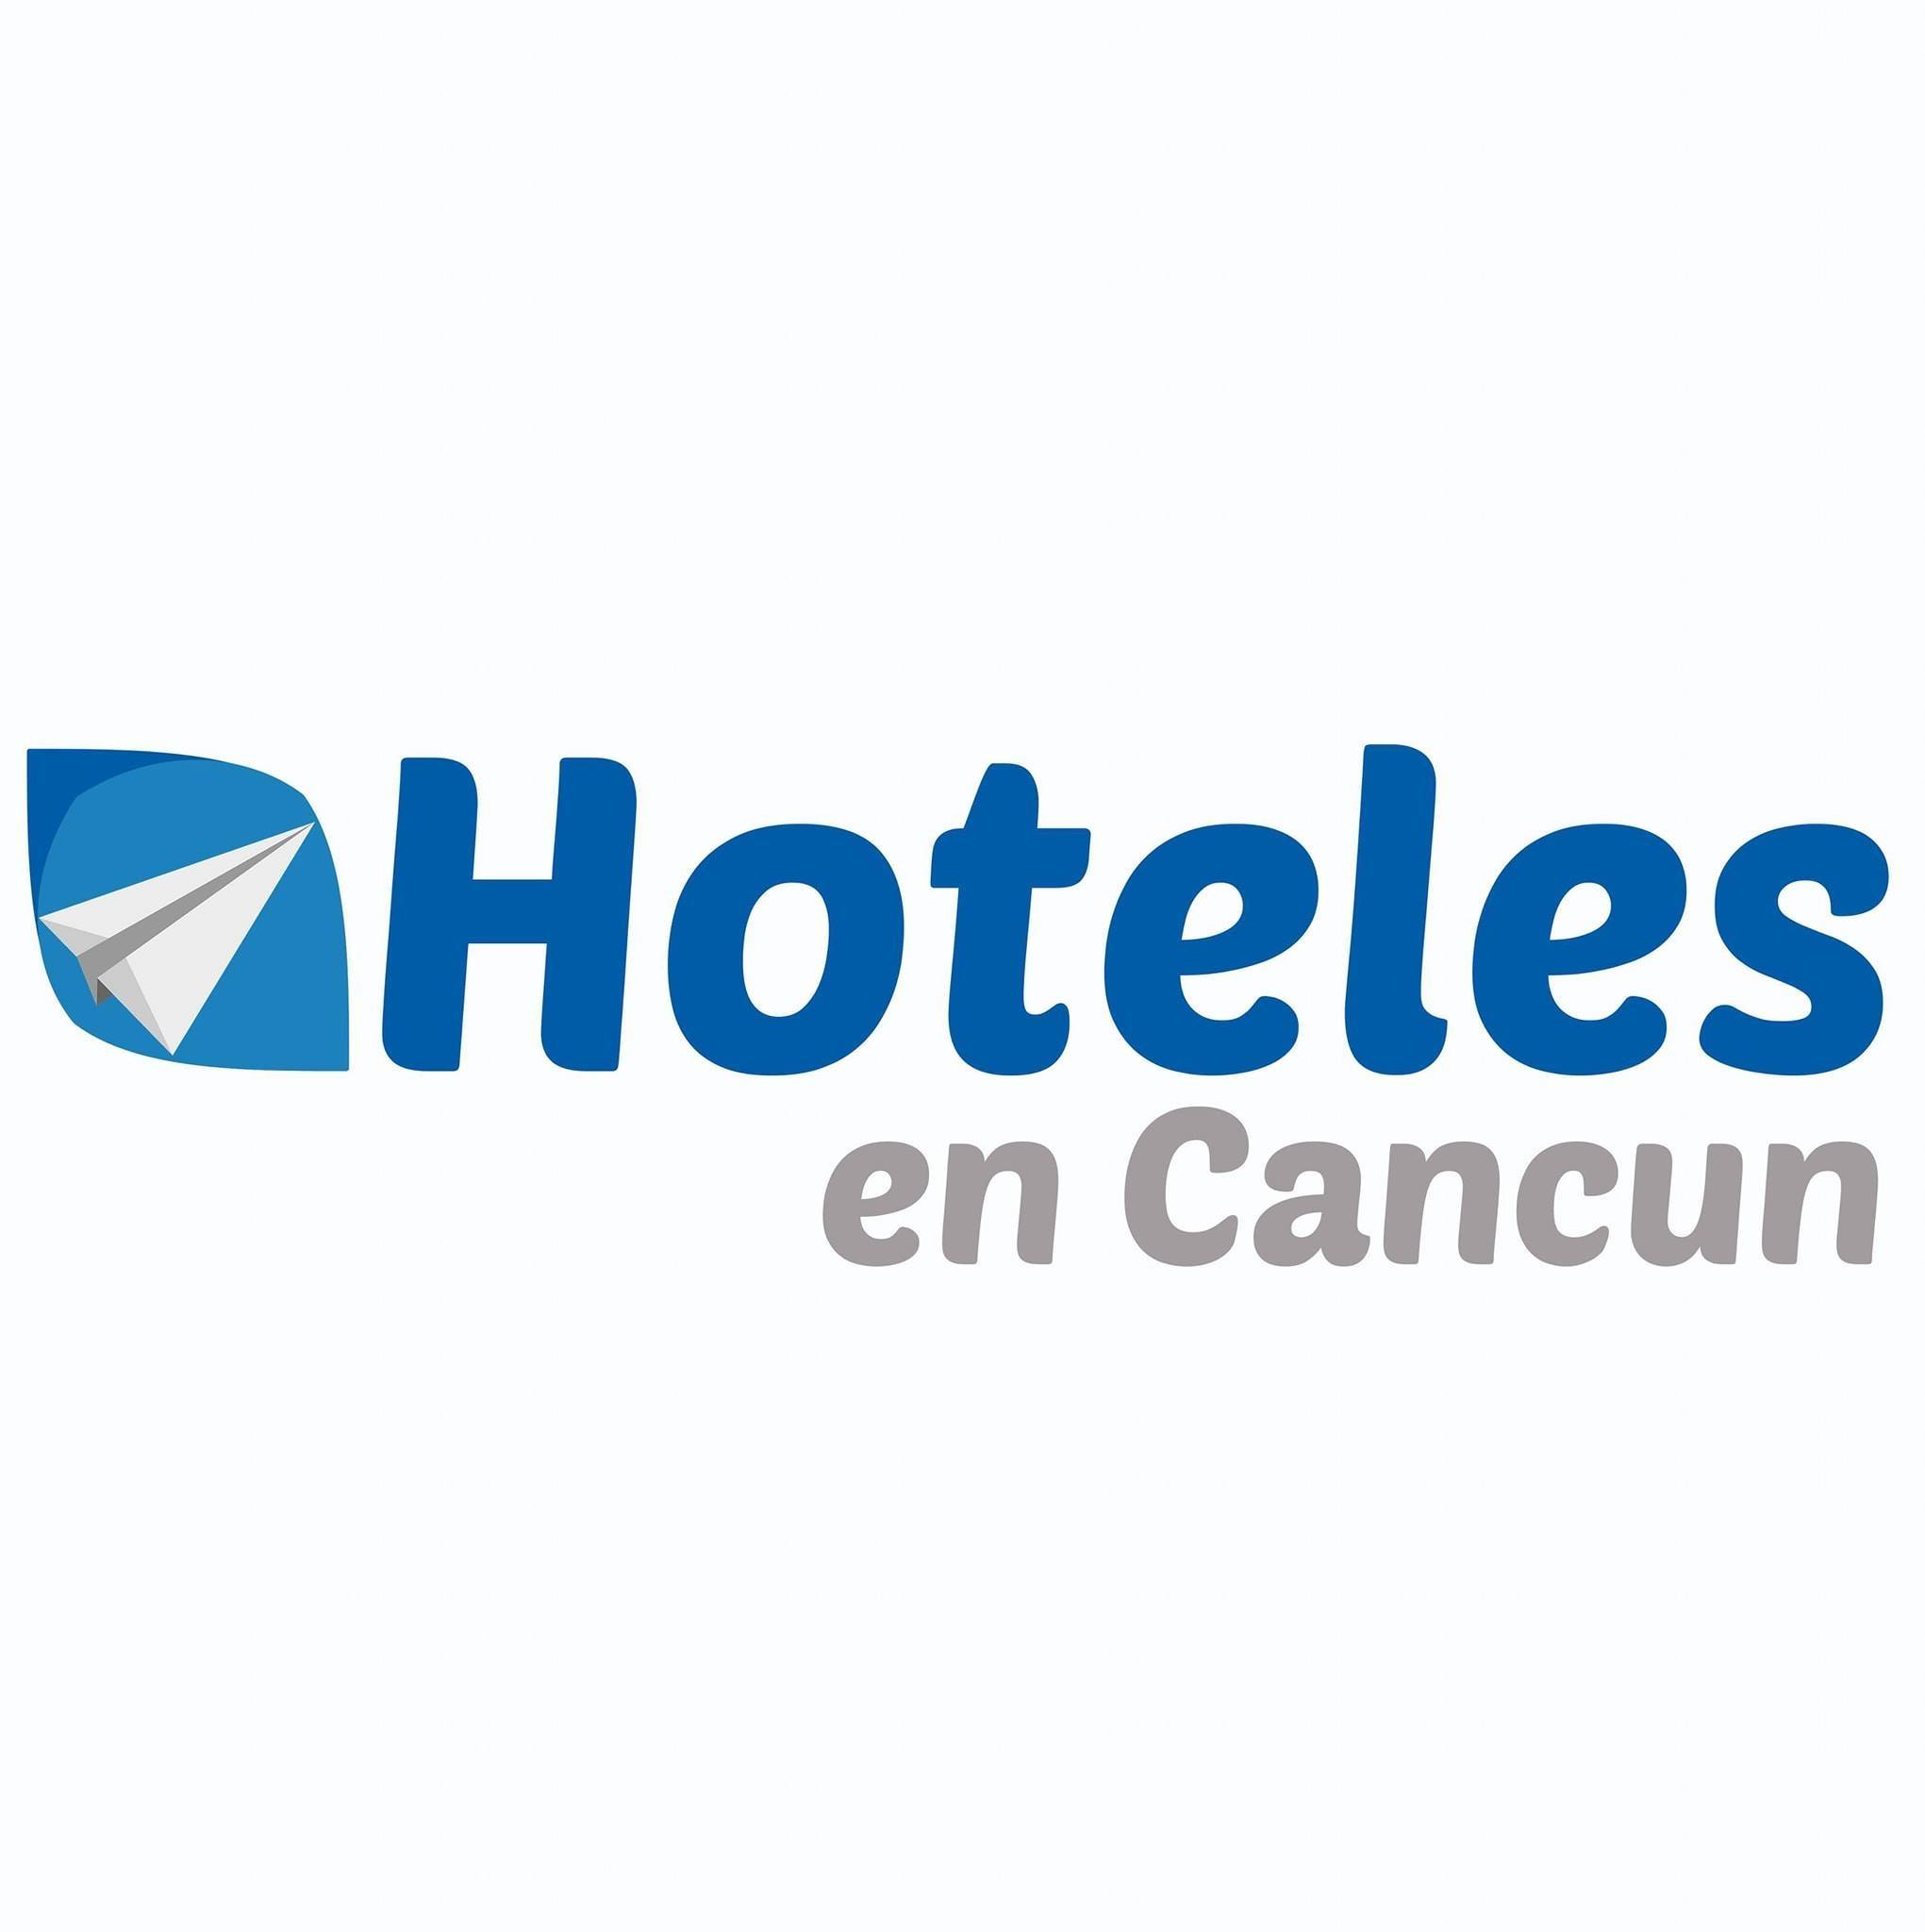 Hoteles en cancun / Imagen del perfil FB